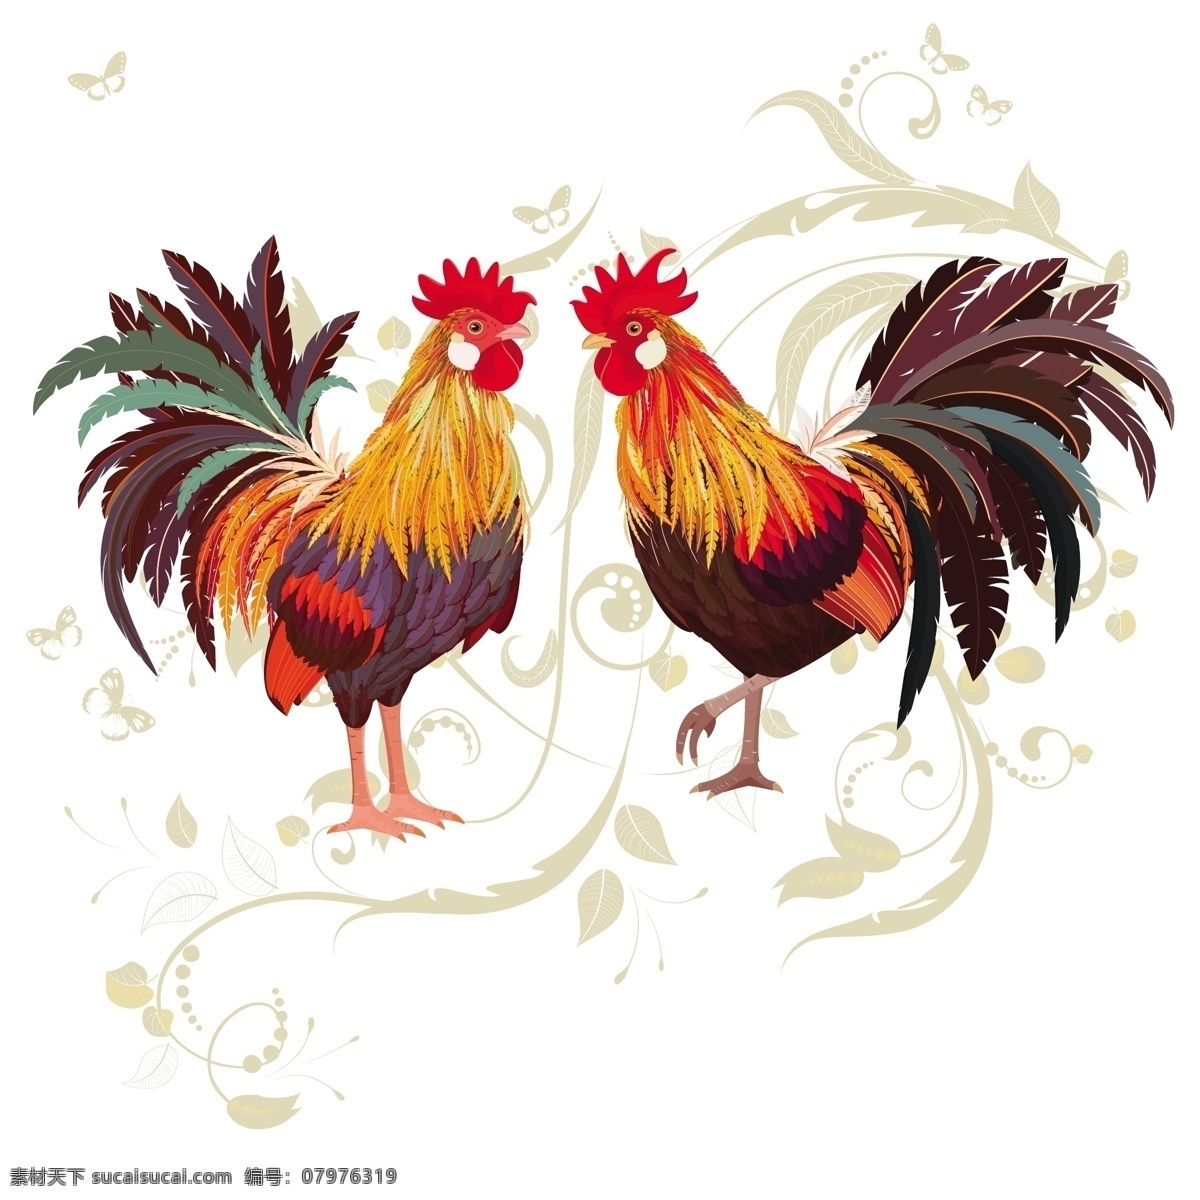 公鸡 鸡 卡通 可爱 扁平化 鸡年 小鸡 蛋壳 母鸡 母鸡生蛋 形象设计 海报 矢量图